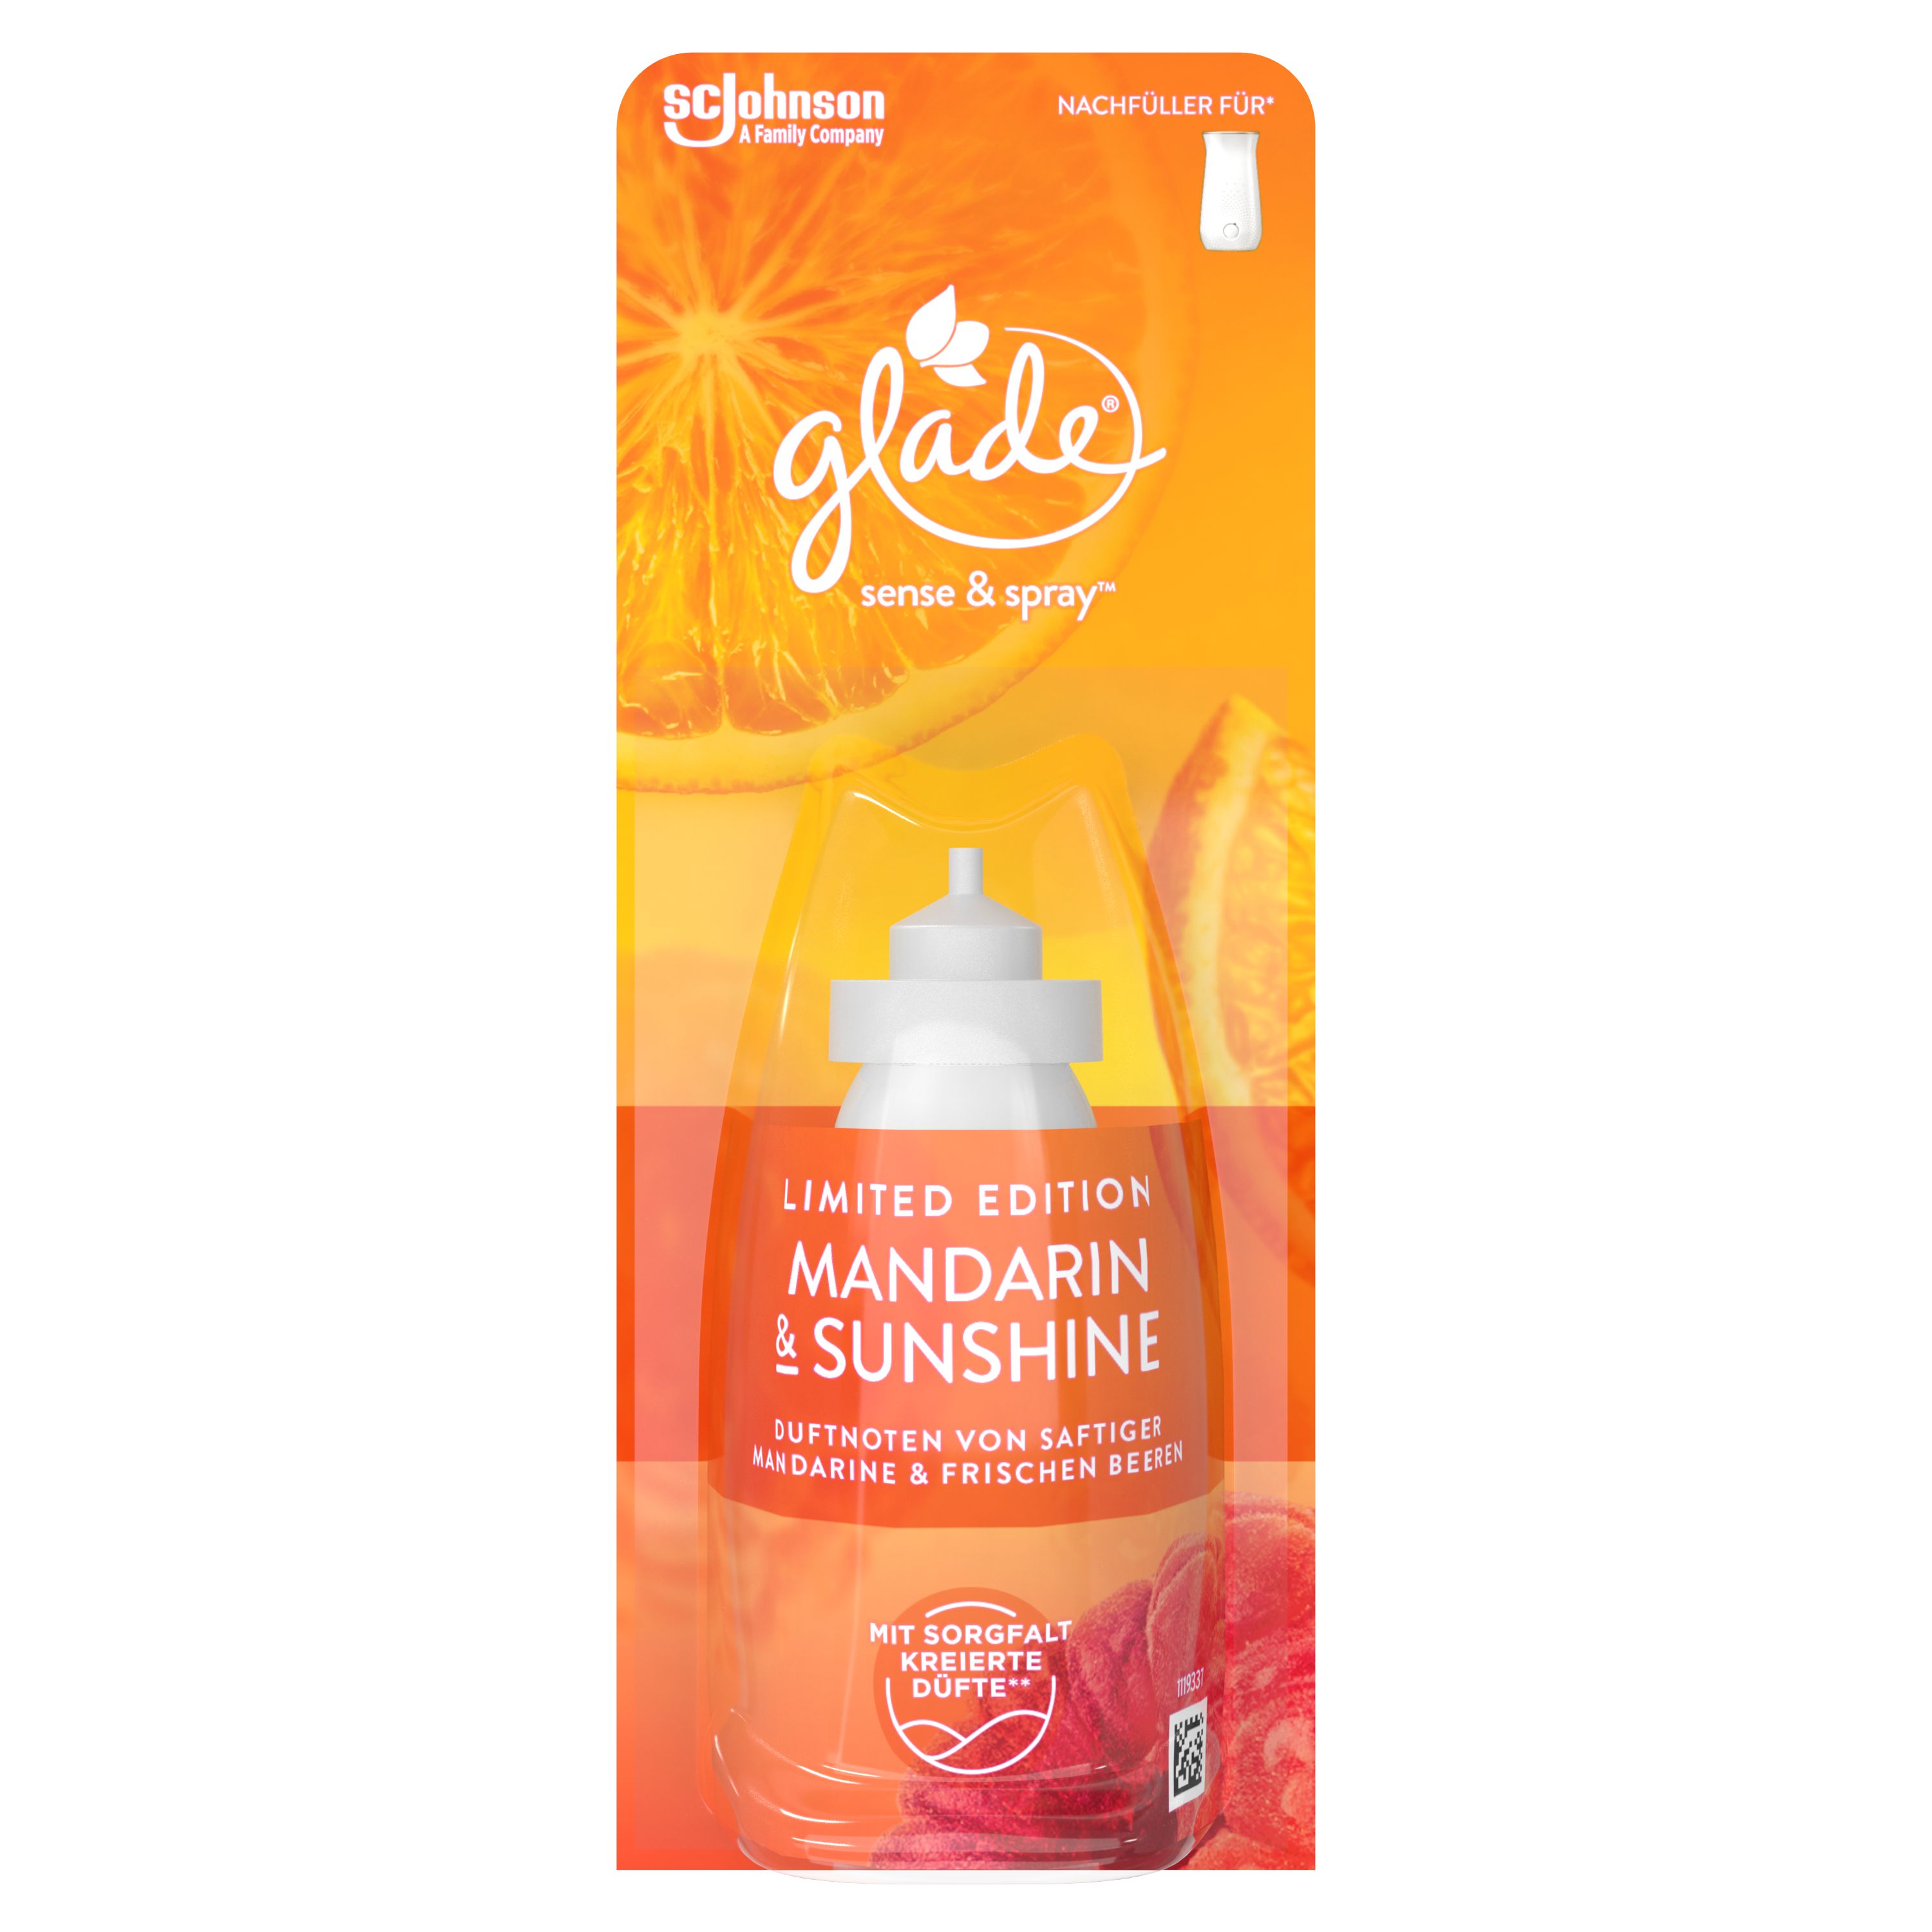 Glade® Sense & Spray™ Mandarin & Sunshine